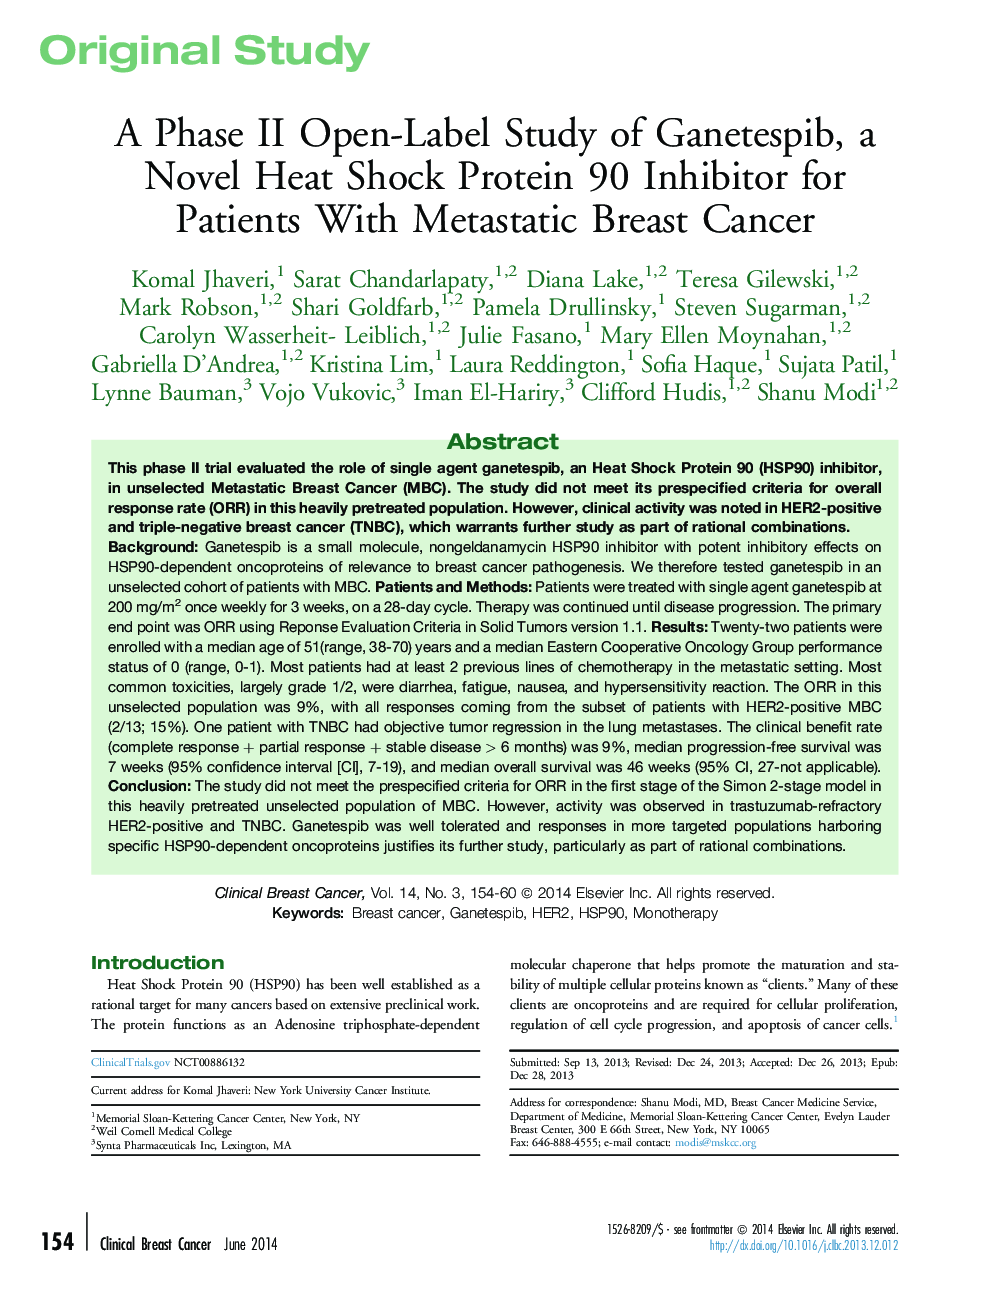 بررسی فاز دوم باز گانت گانتسپیب، یک پروتئین تسکین دهنده حرارت رمان 90 برای بیماران مبتلا به سرطان متاستاتیک پستان 